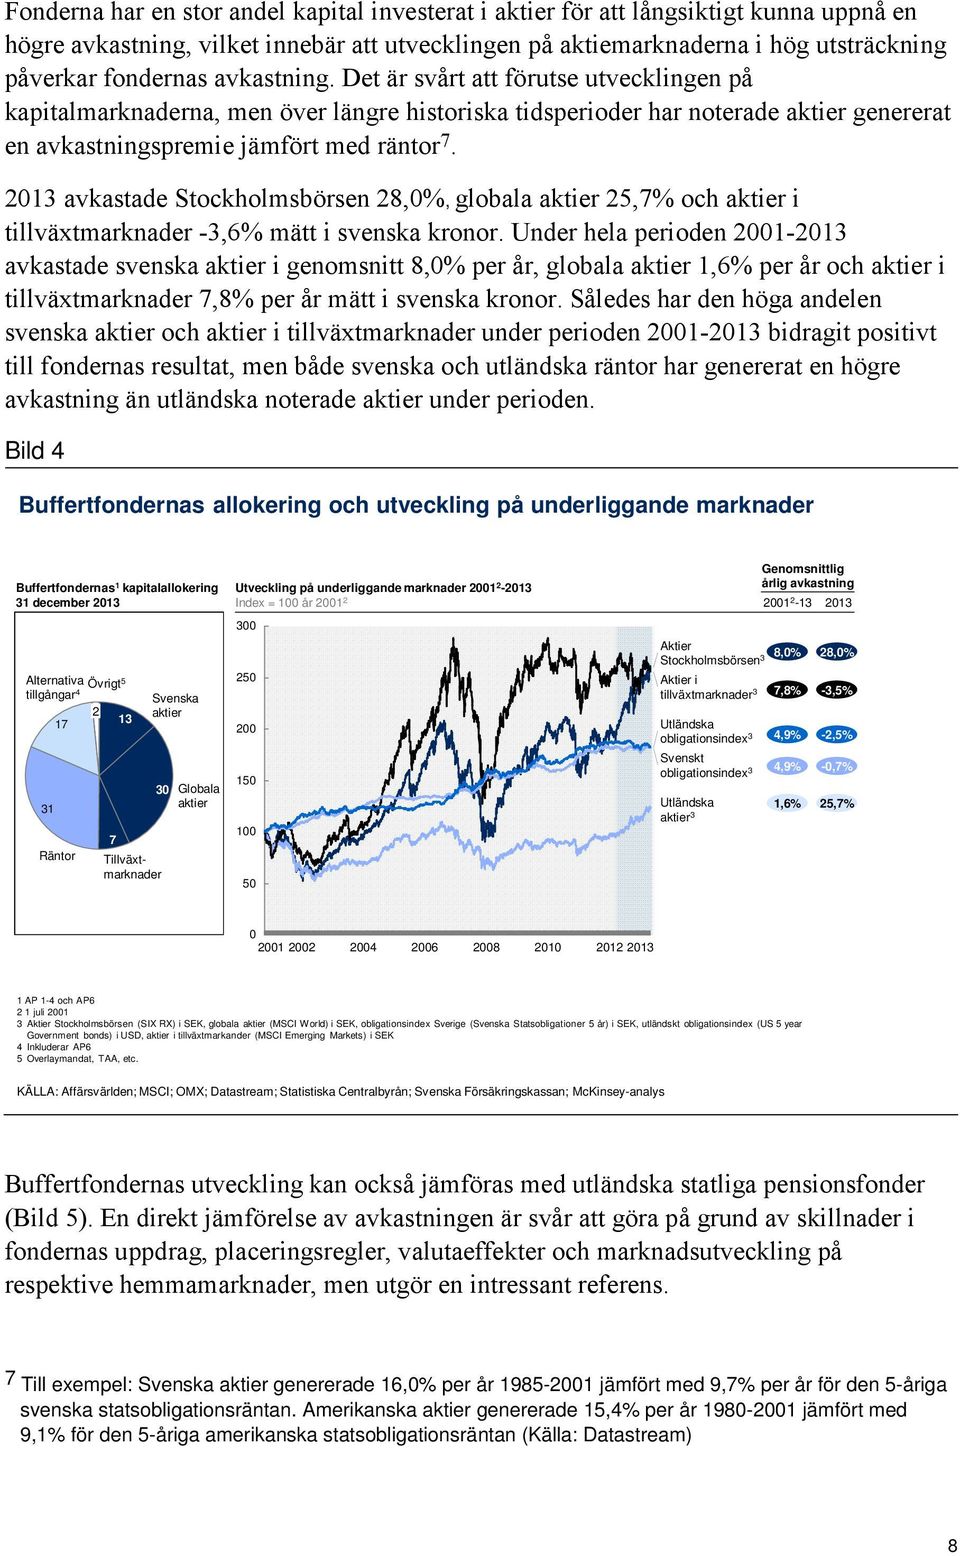 2013 avkastade Stockholmsbörsen 28,0%, globala aktier 25,7% och aktier i tillväxtmarknader -3,6% mätt i svenska kronor.